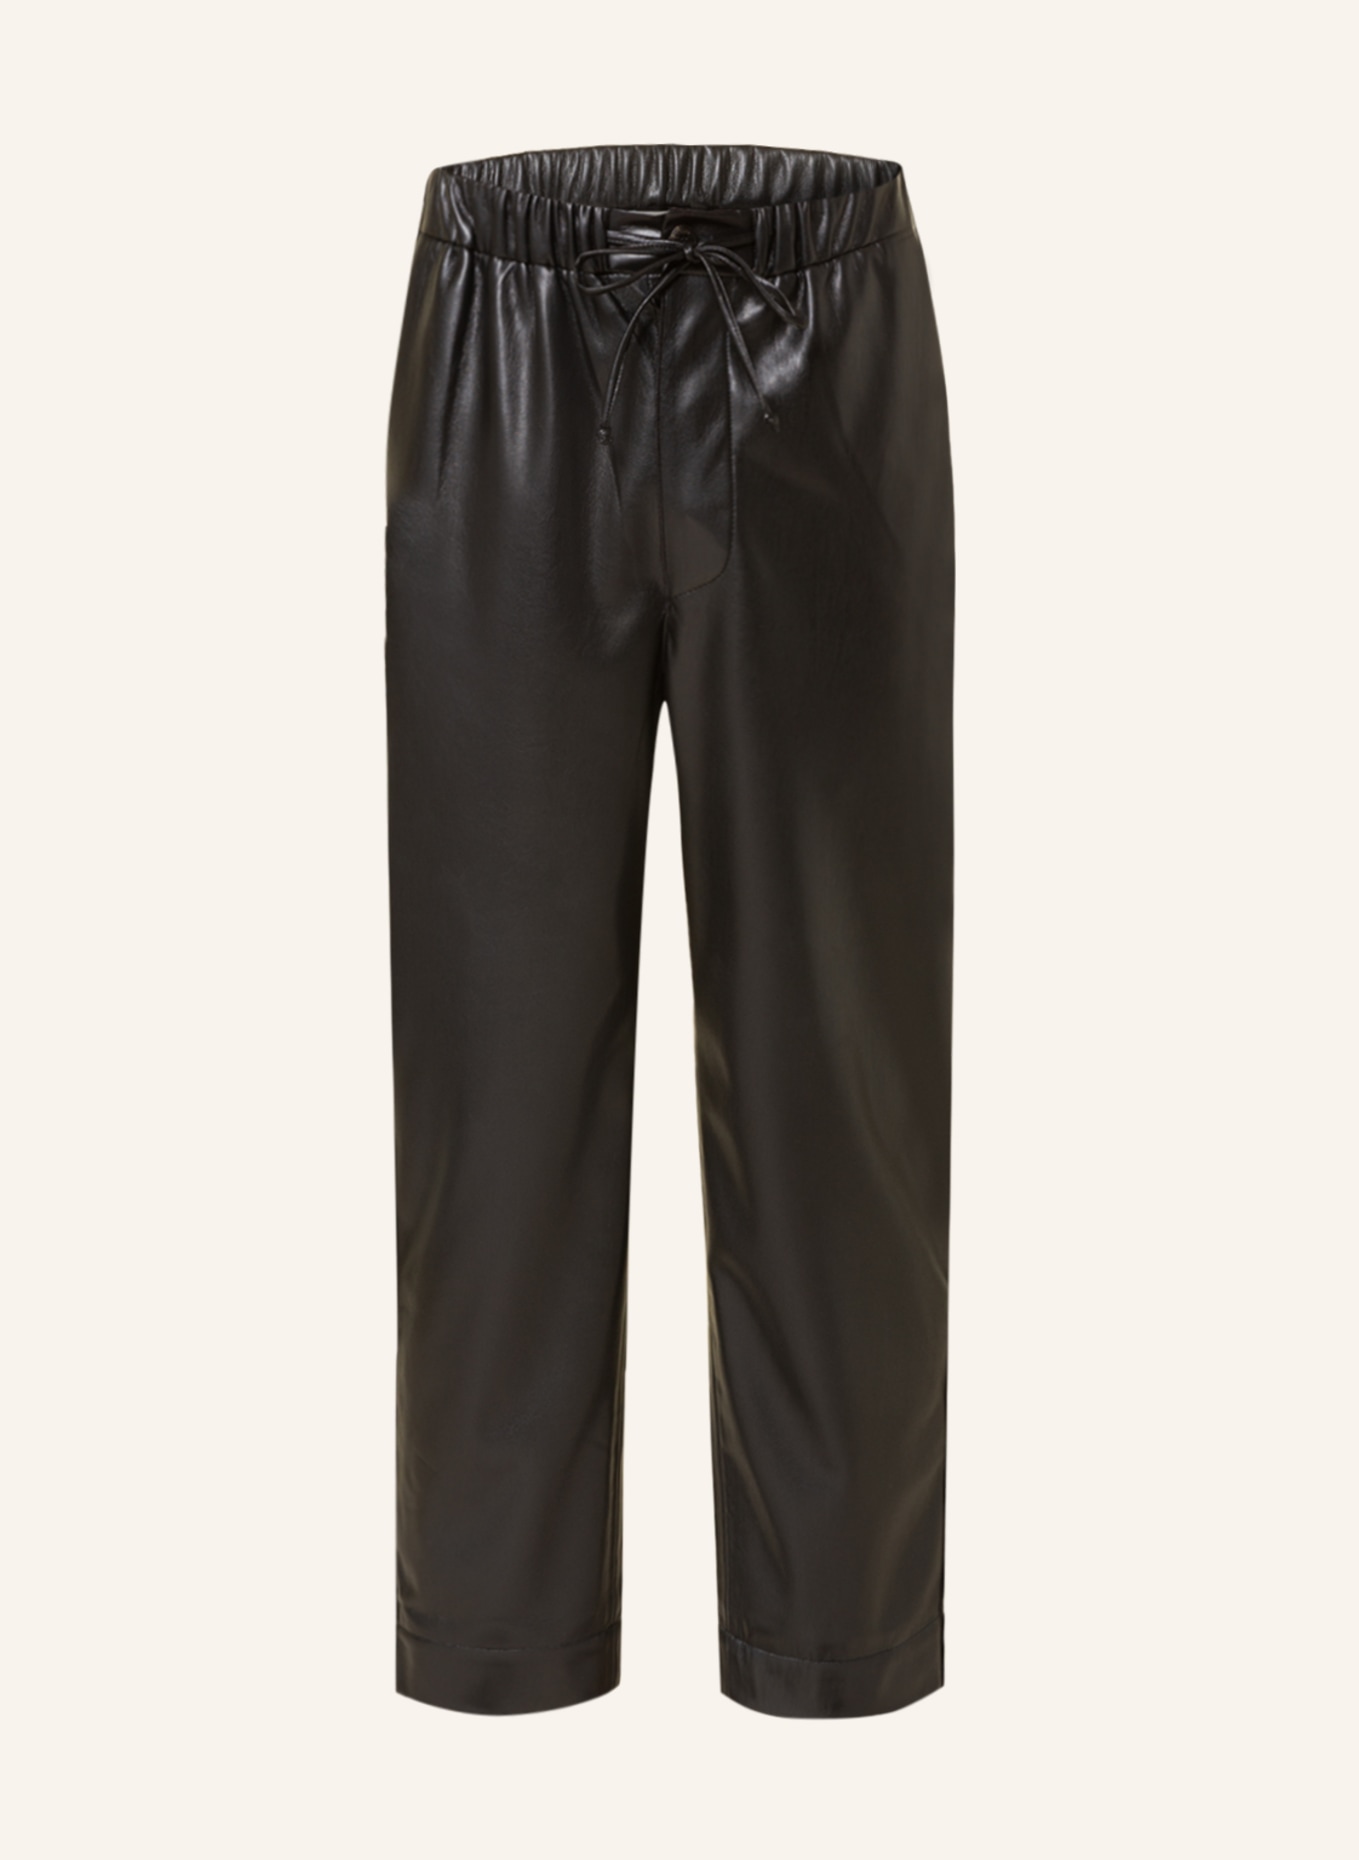 Nanushka Trousers JAIN regular fit in leather look, Color: BLACK (Image 1)